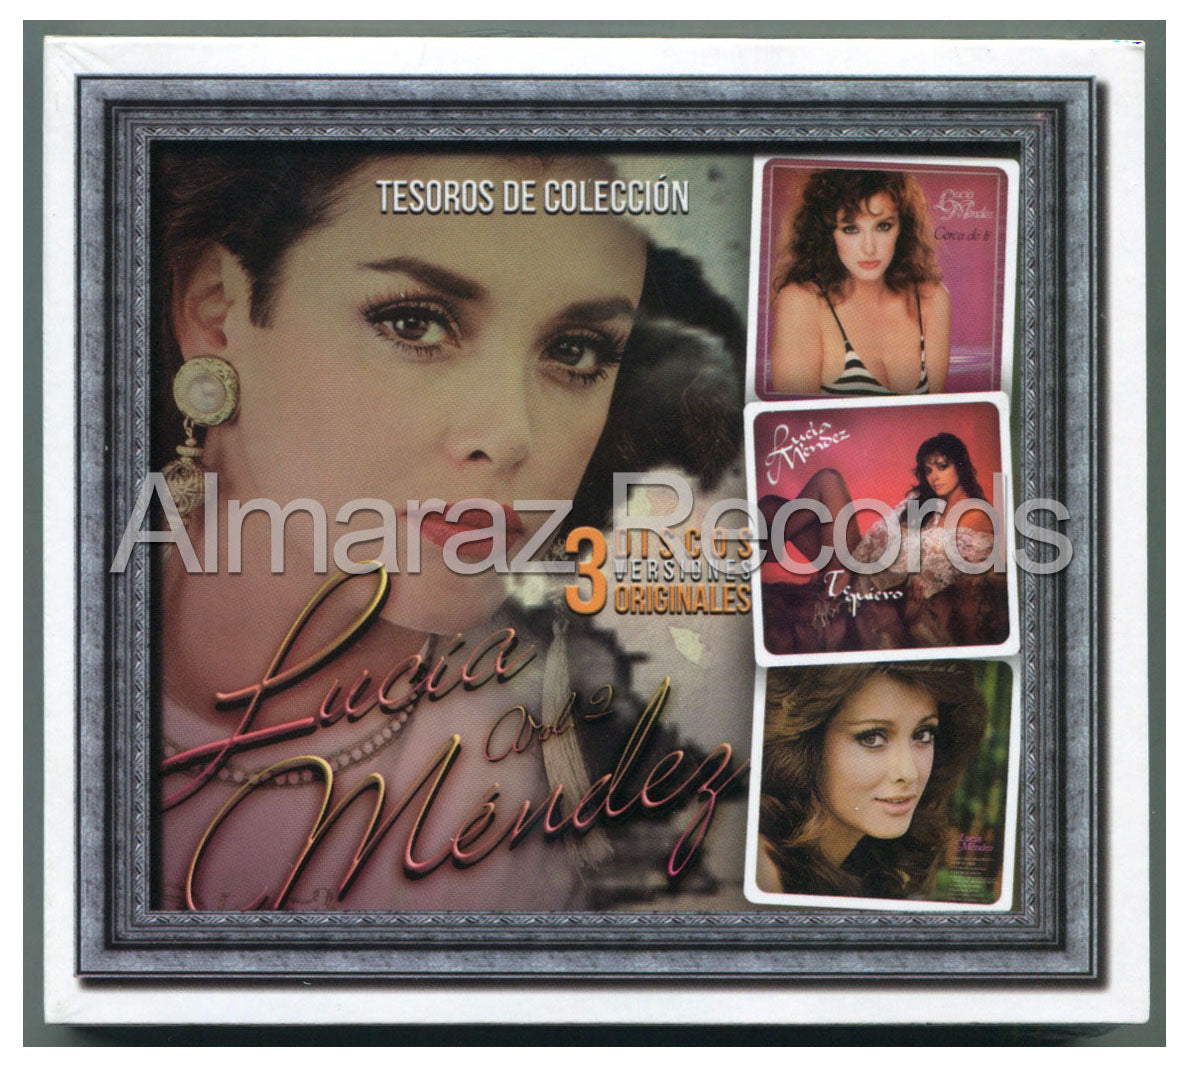 Lucia Mendez Tesoros De Coleccion Vol. 2 3CD